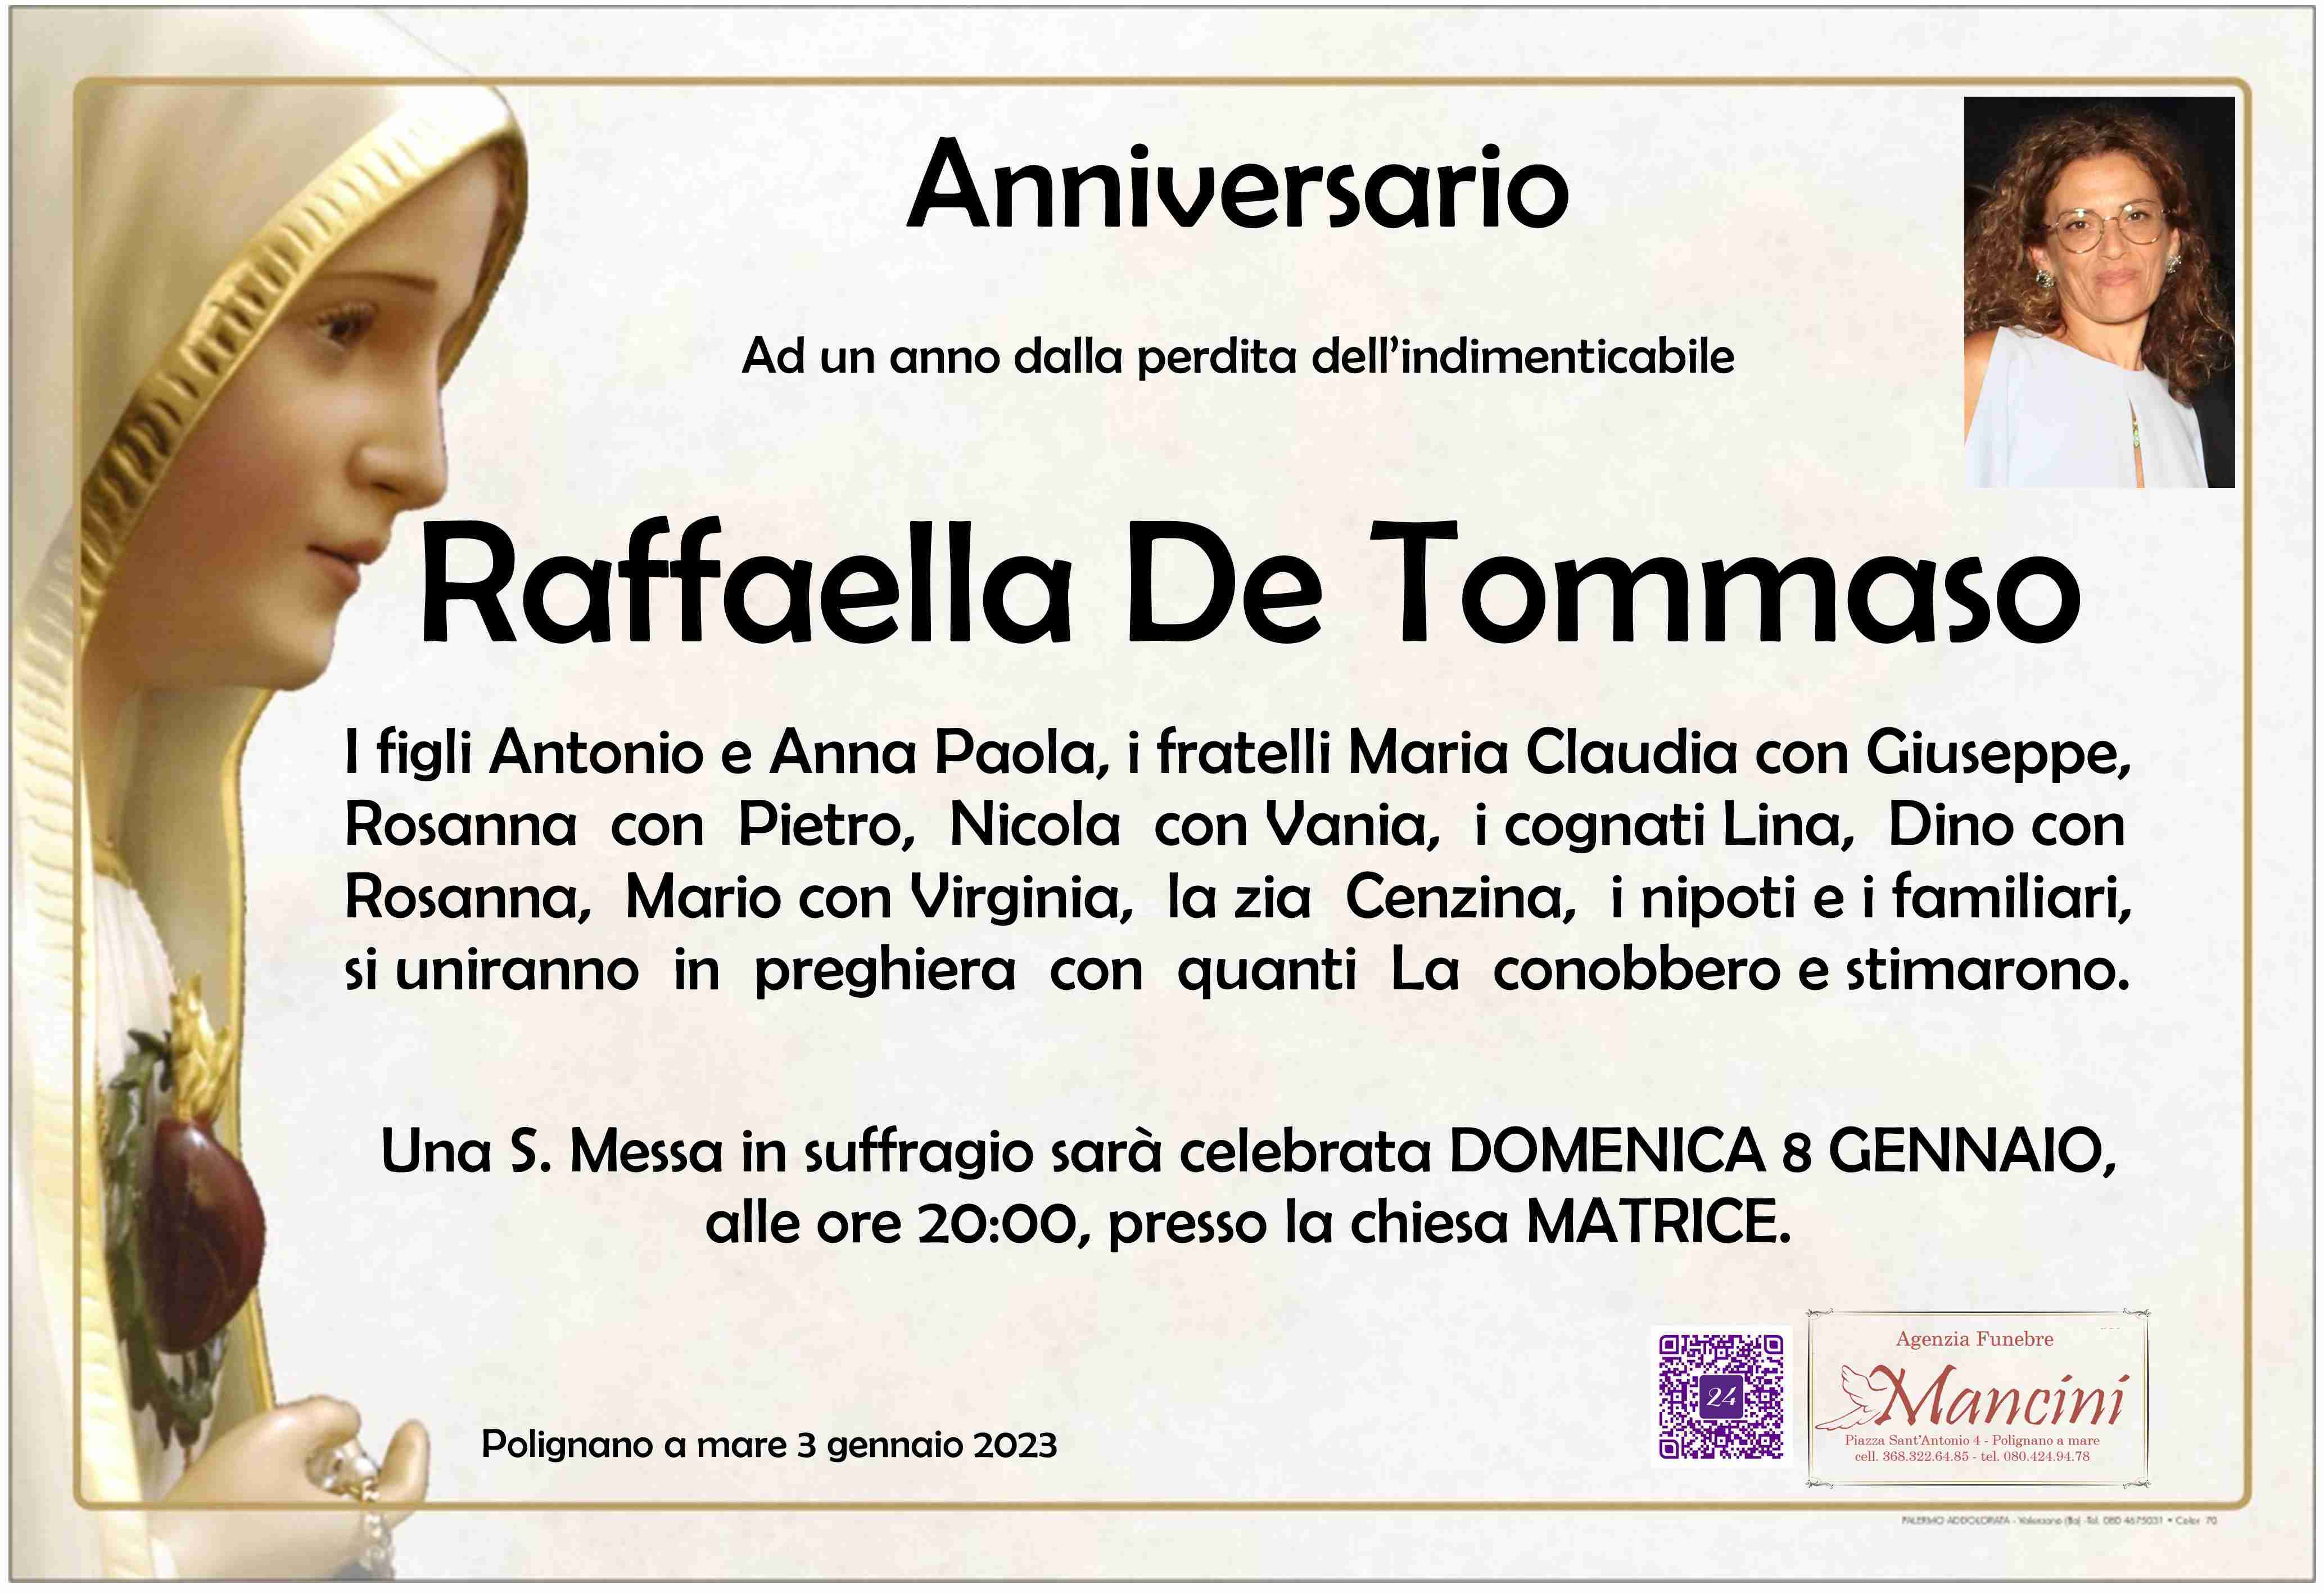 Raffaella De Tommaso